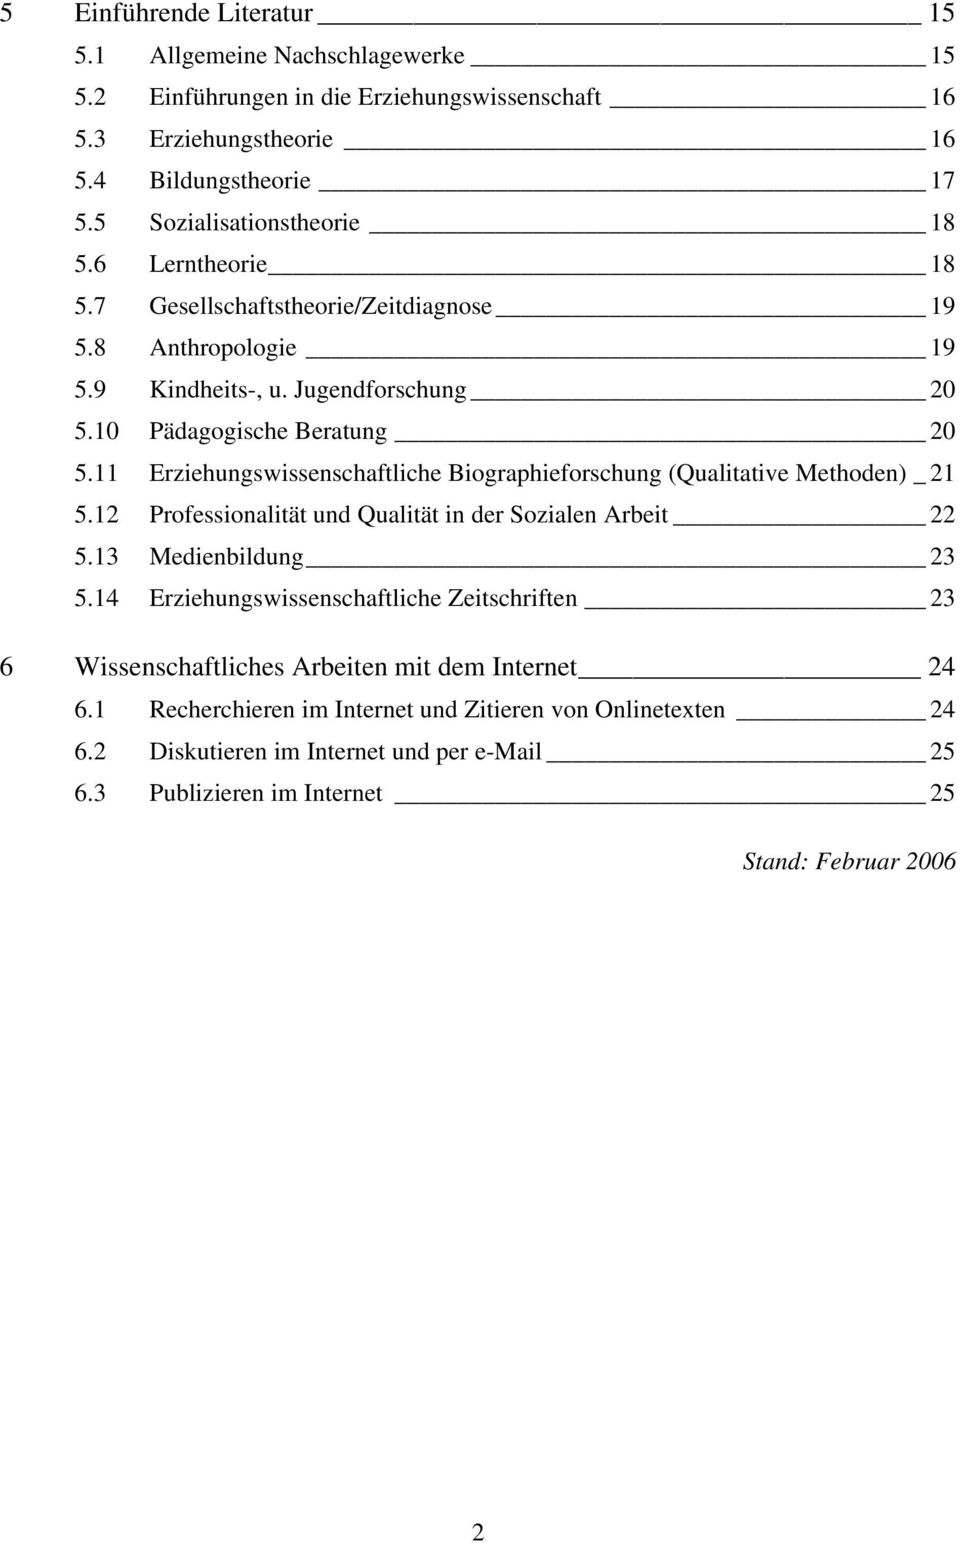 11 Erziehungswissenschaftliche Biographieforschung (Qualitative Methoden) _ 21 5.12 Professionalität und Qualität in der Sozialen Arbeit 22 5.13 Medienbildung 23 5.